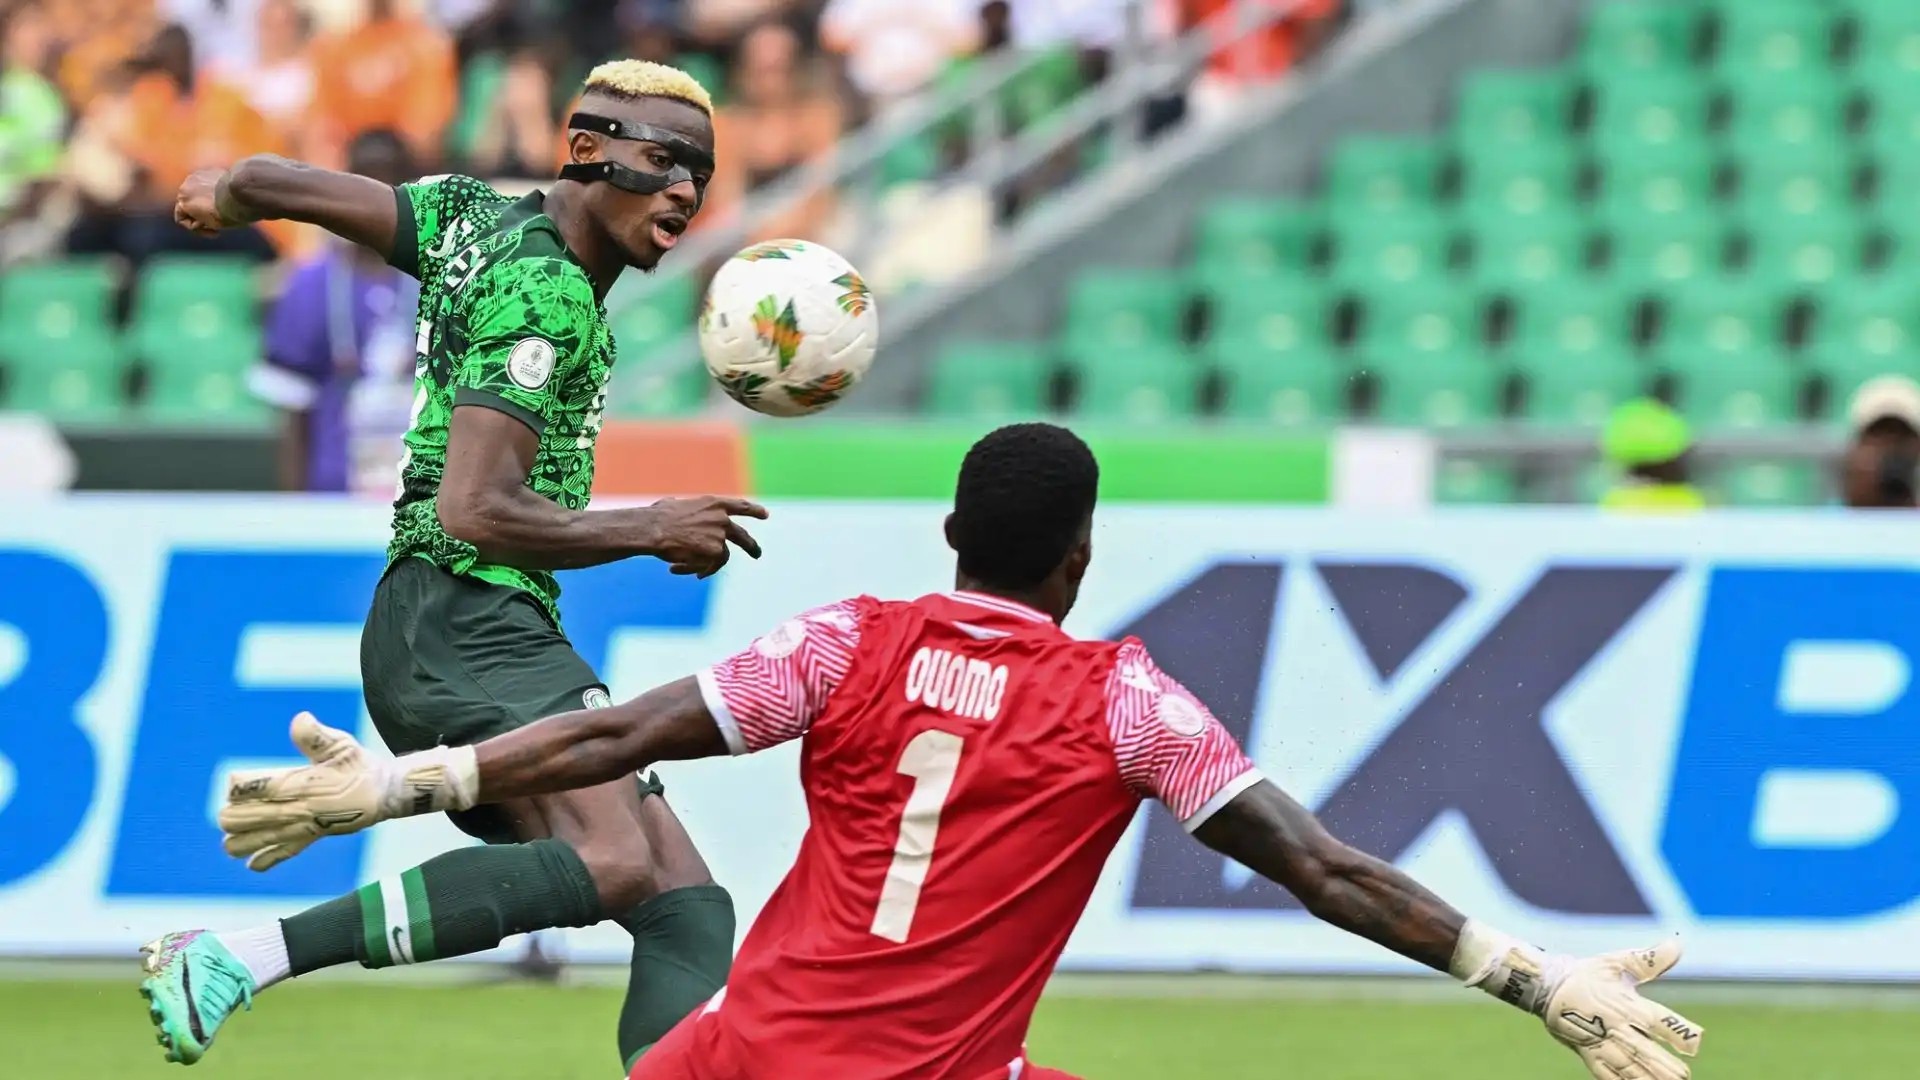 L'attaccante del Napoli ha segnato ma la sua Nigeria non è riuscita ad andare oltre l'1-1 contro la Guinea Equatoriale al debutto nella competizione